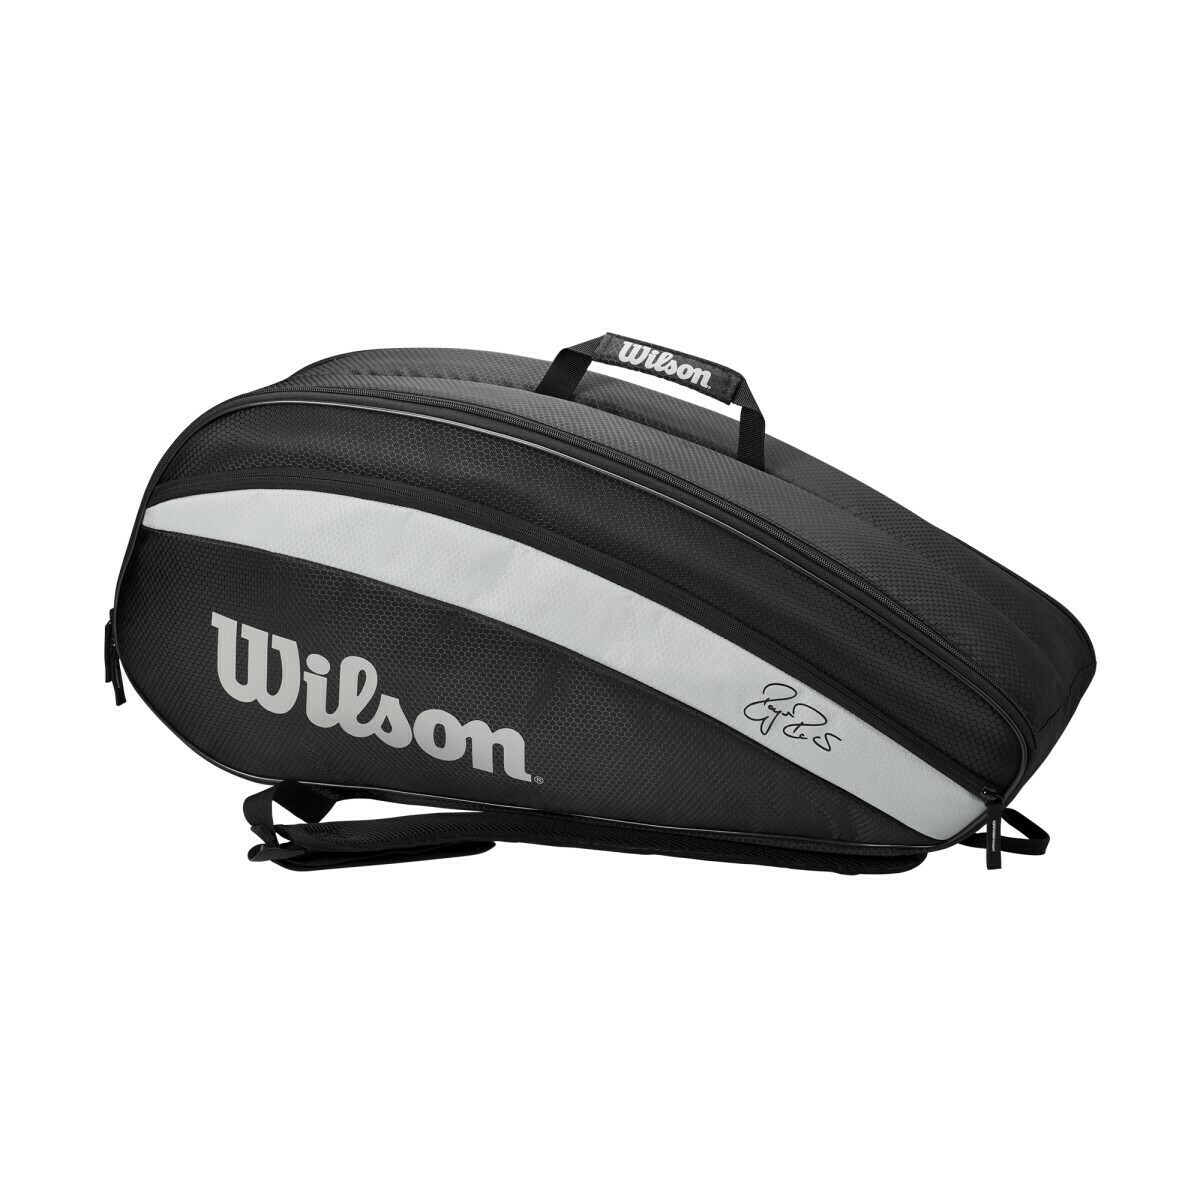 Wilson Federer Team Bag - 6 Pack - Black